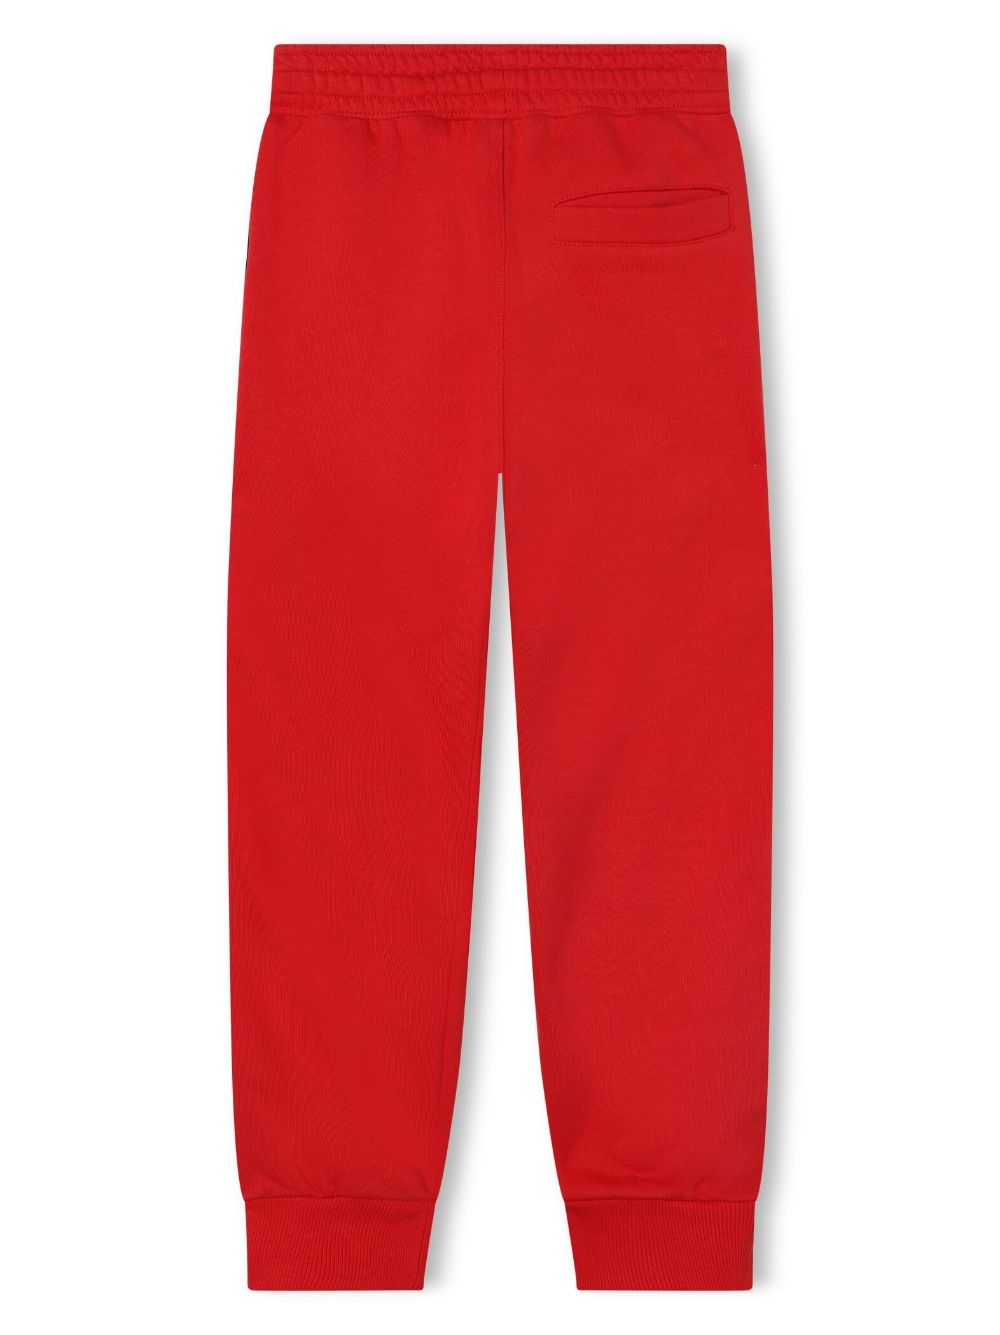 Pantalon rouge avec bandes latérales noires avec logo pour enfant